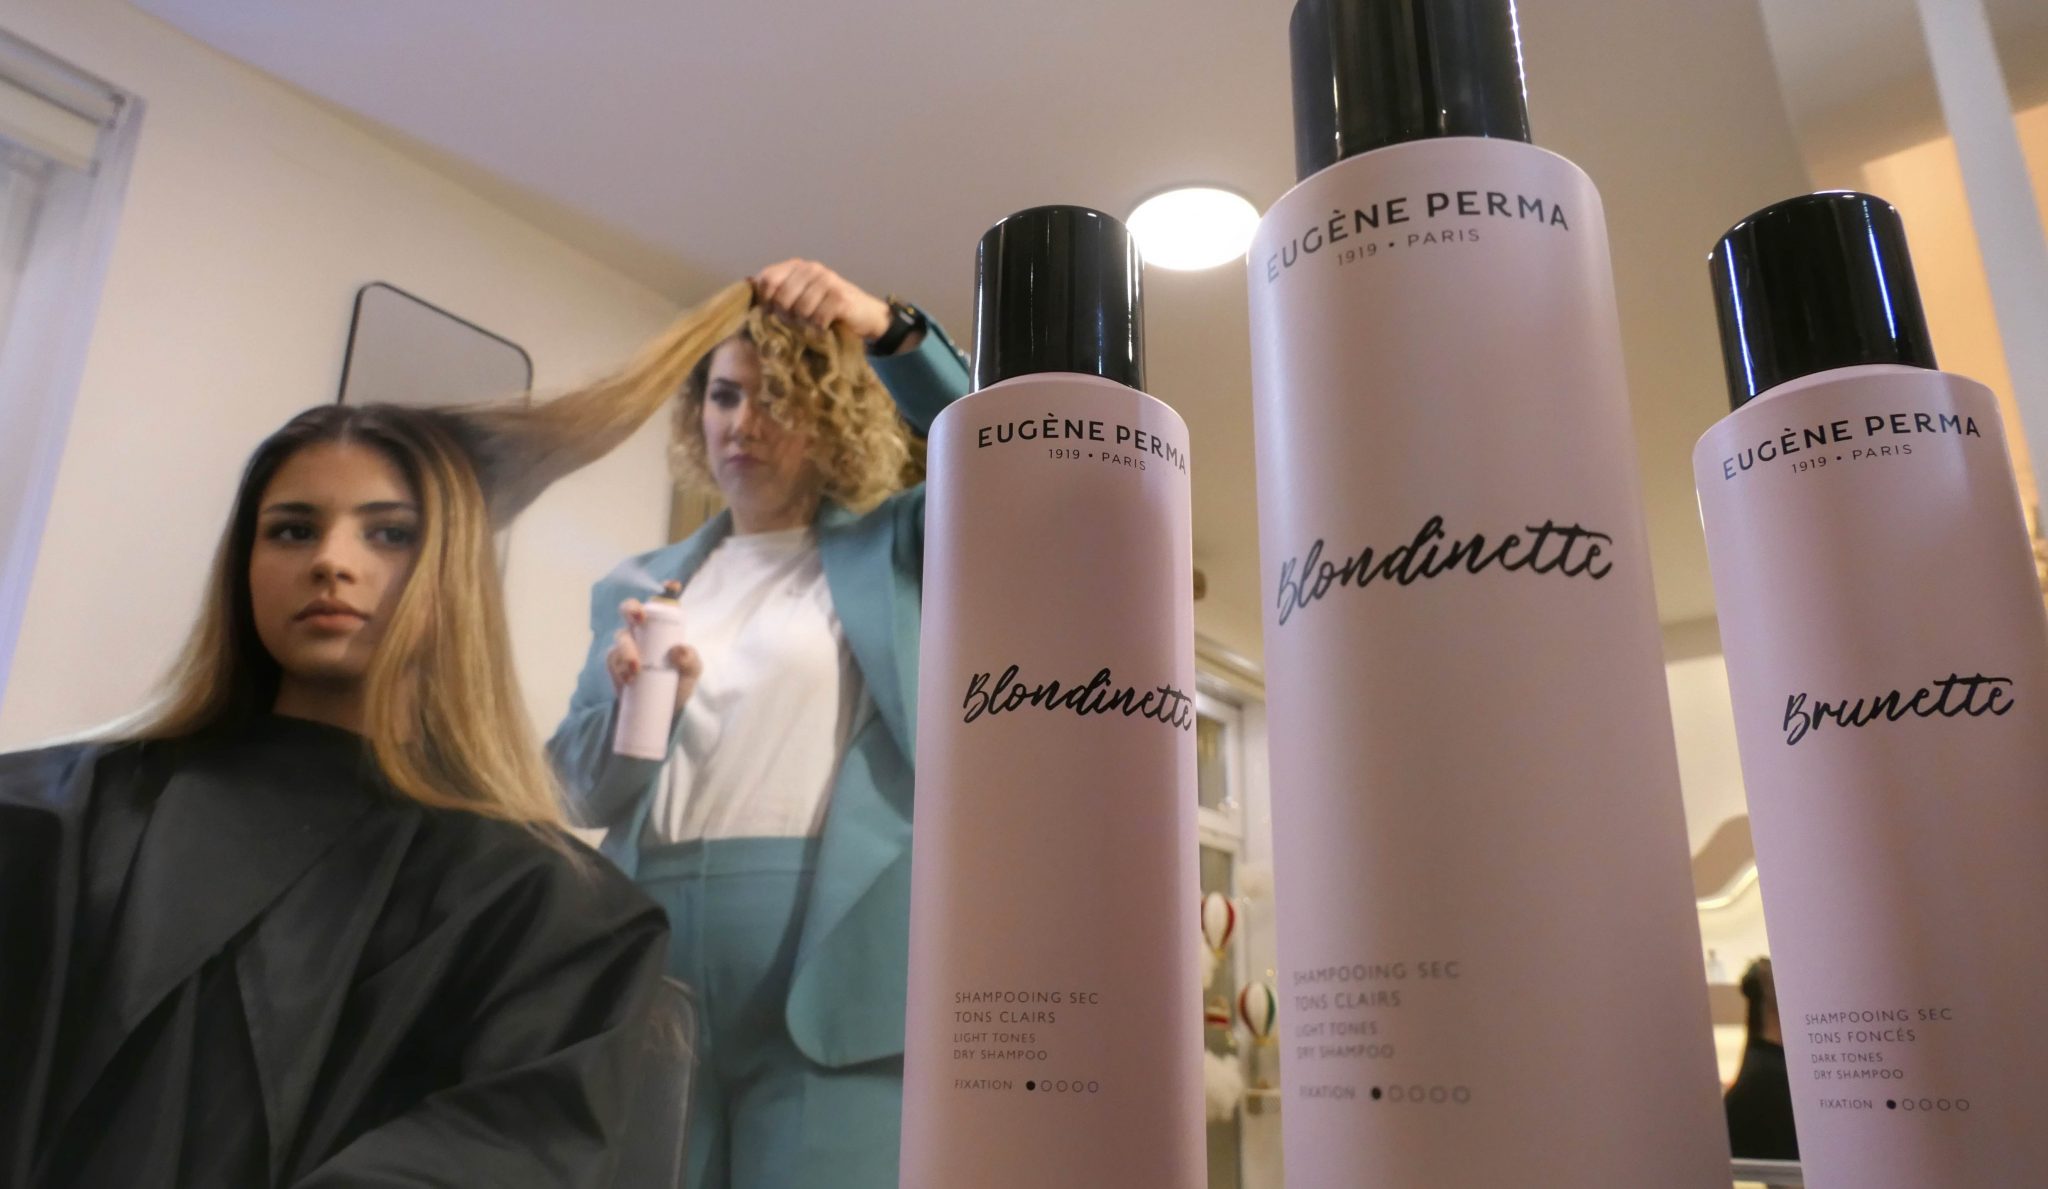 Eugene Perma ima najkvalitetniji šampon za suho pranje kose na ovom tržištu!